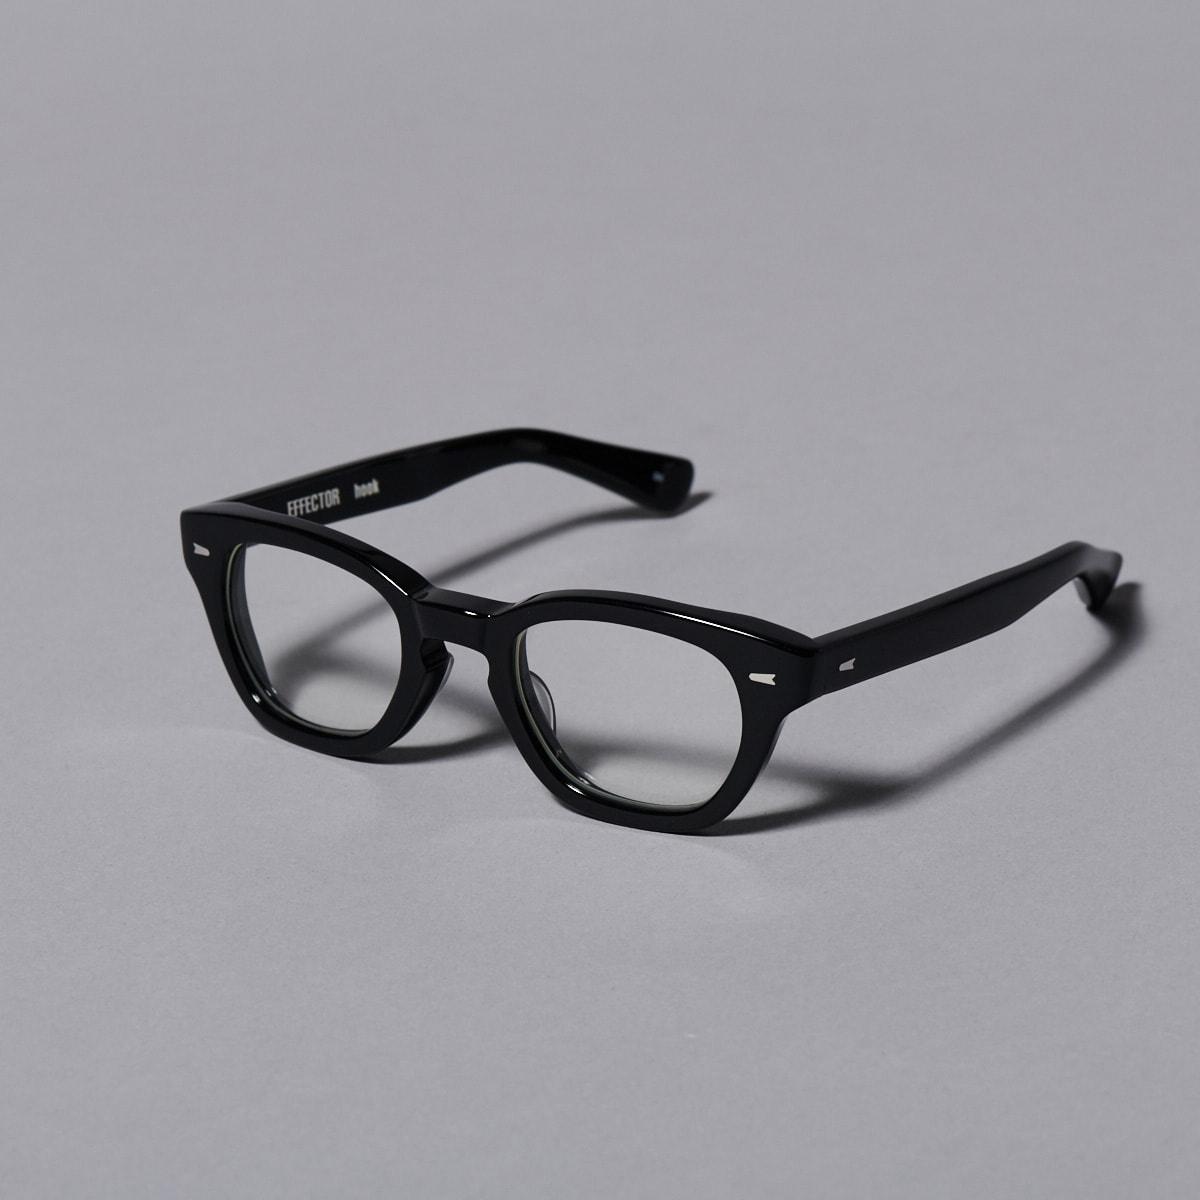 セルフレームの黒縁メガネ。定番から新作まで、黒のスタンダードアイテム - Slide:3